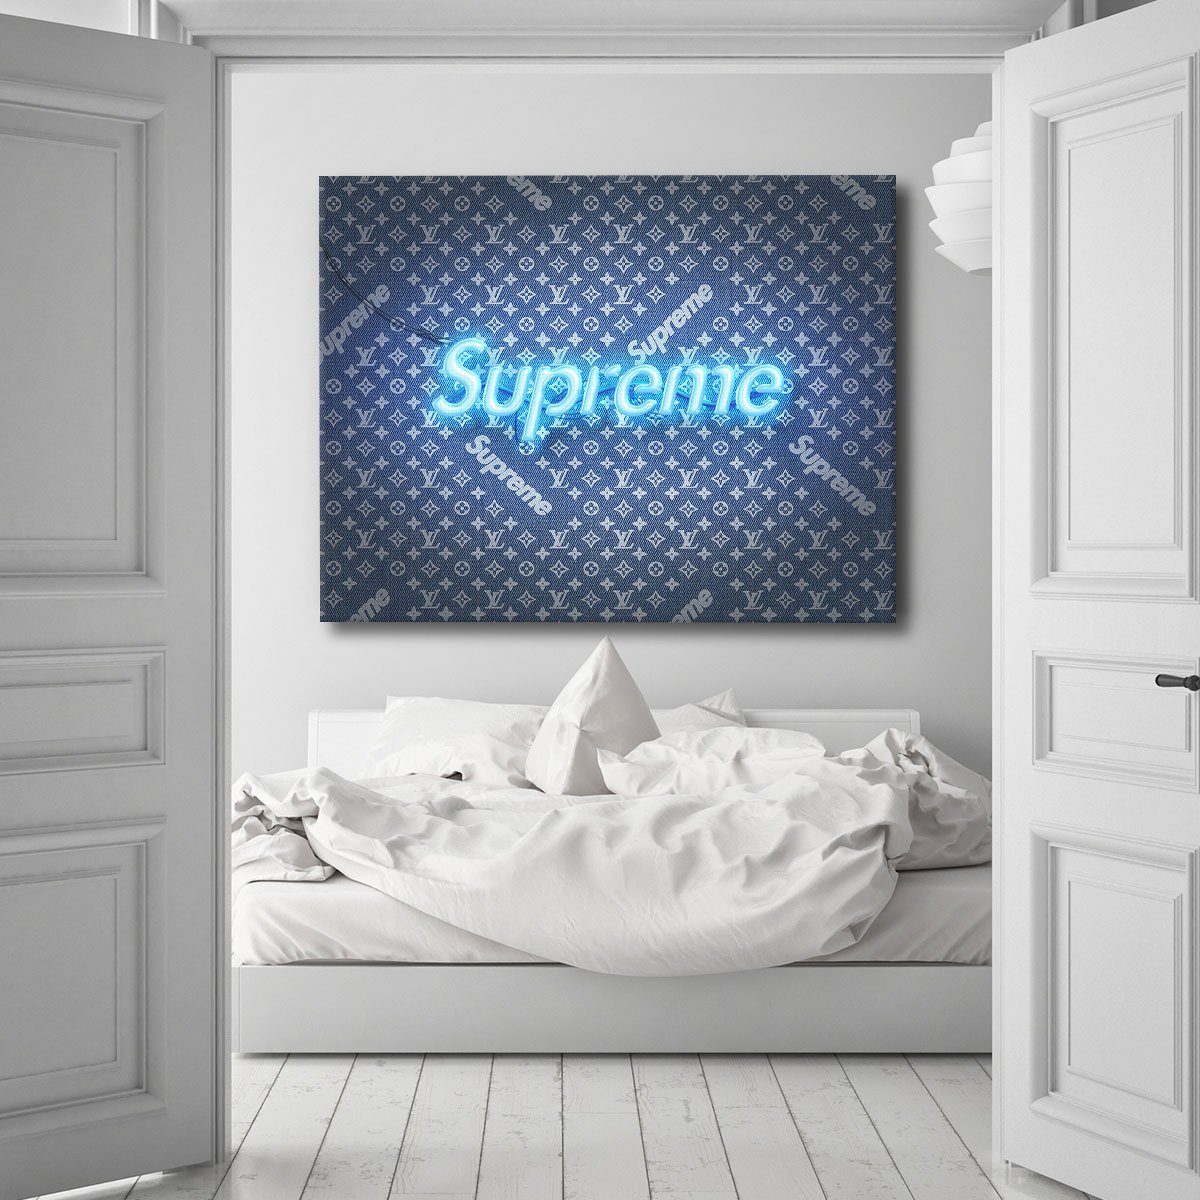 LV Supreme Blue Neon – Canvas Cultures